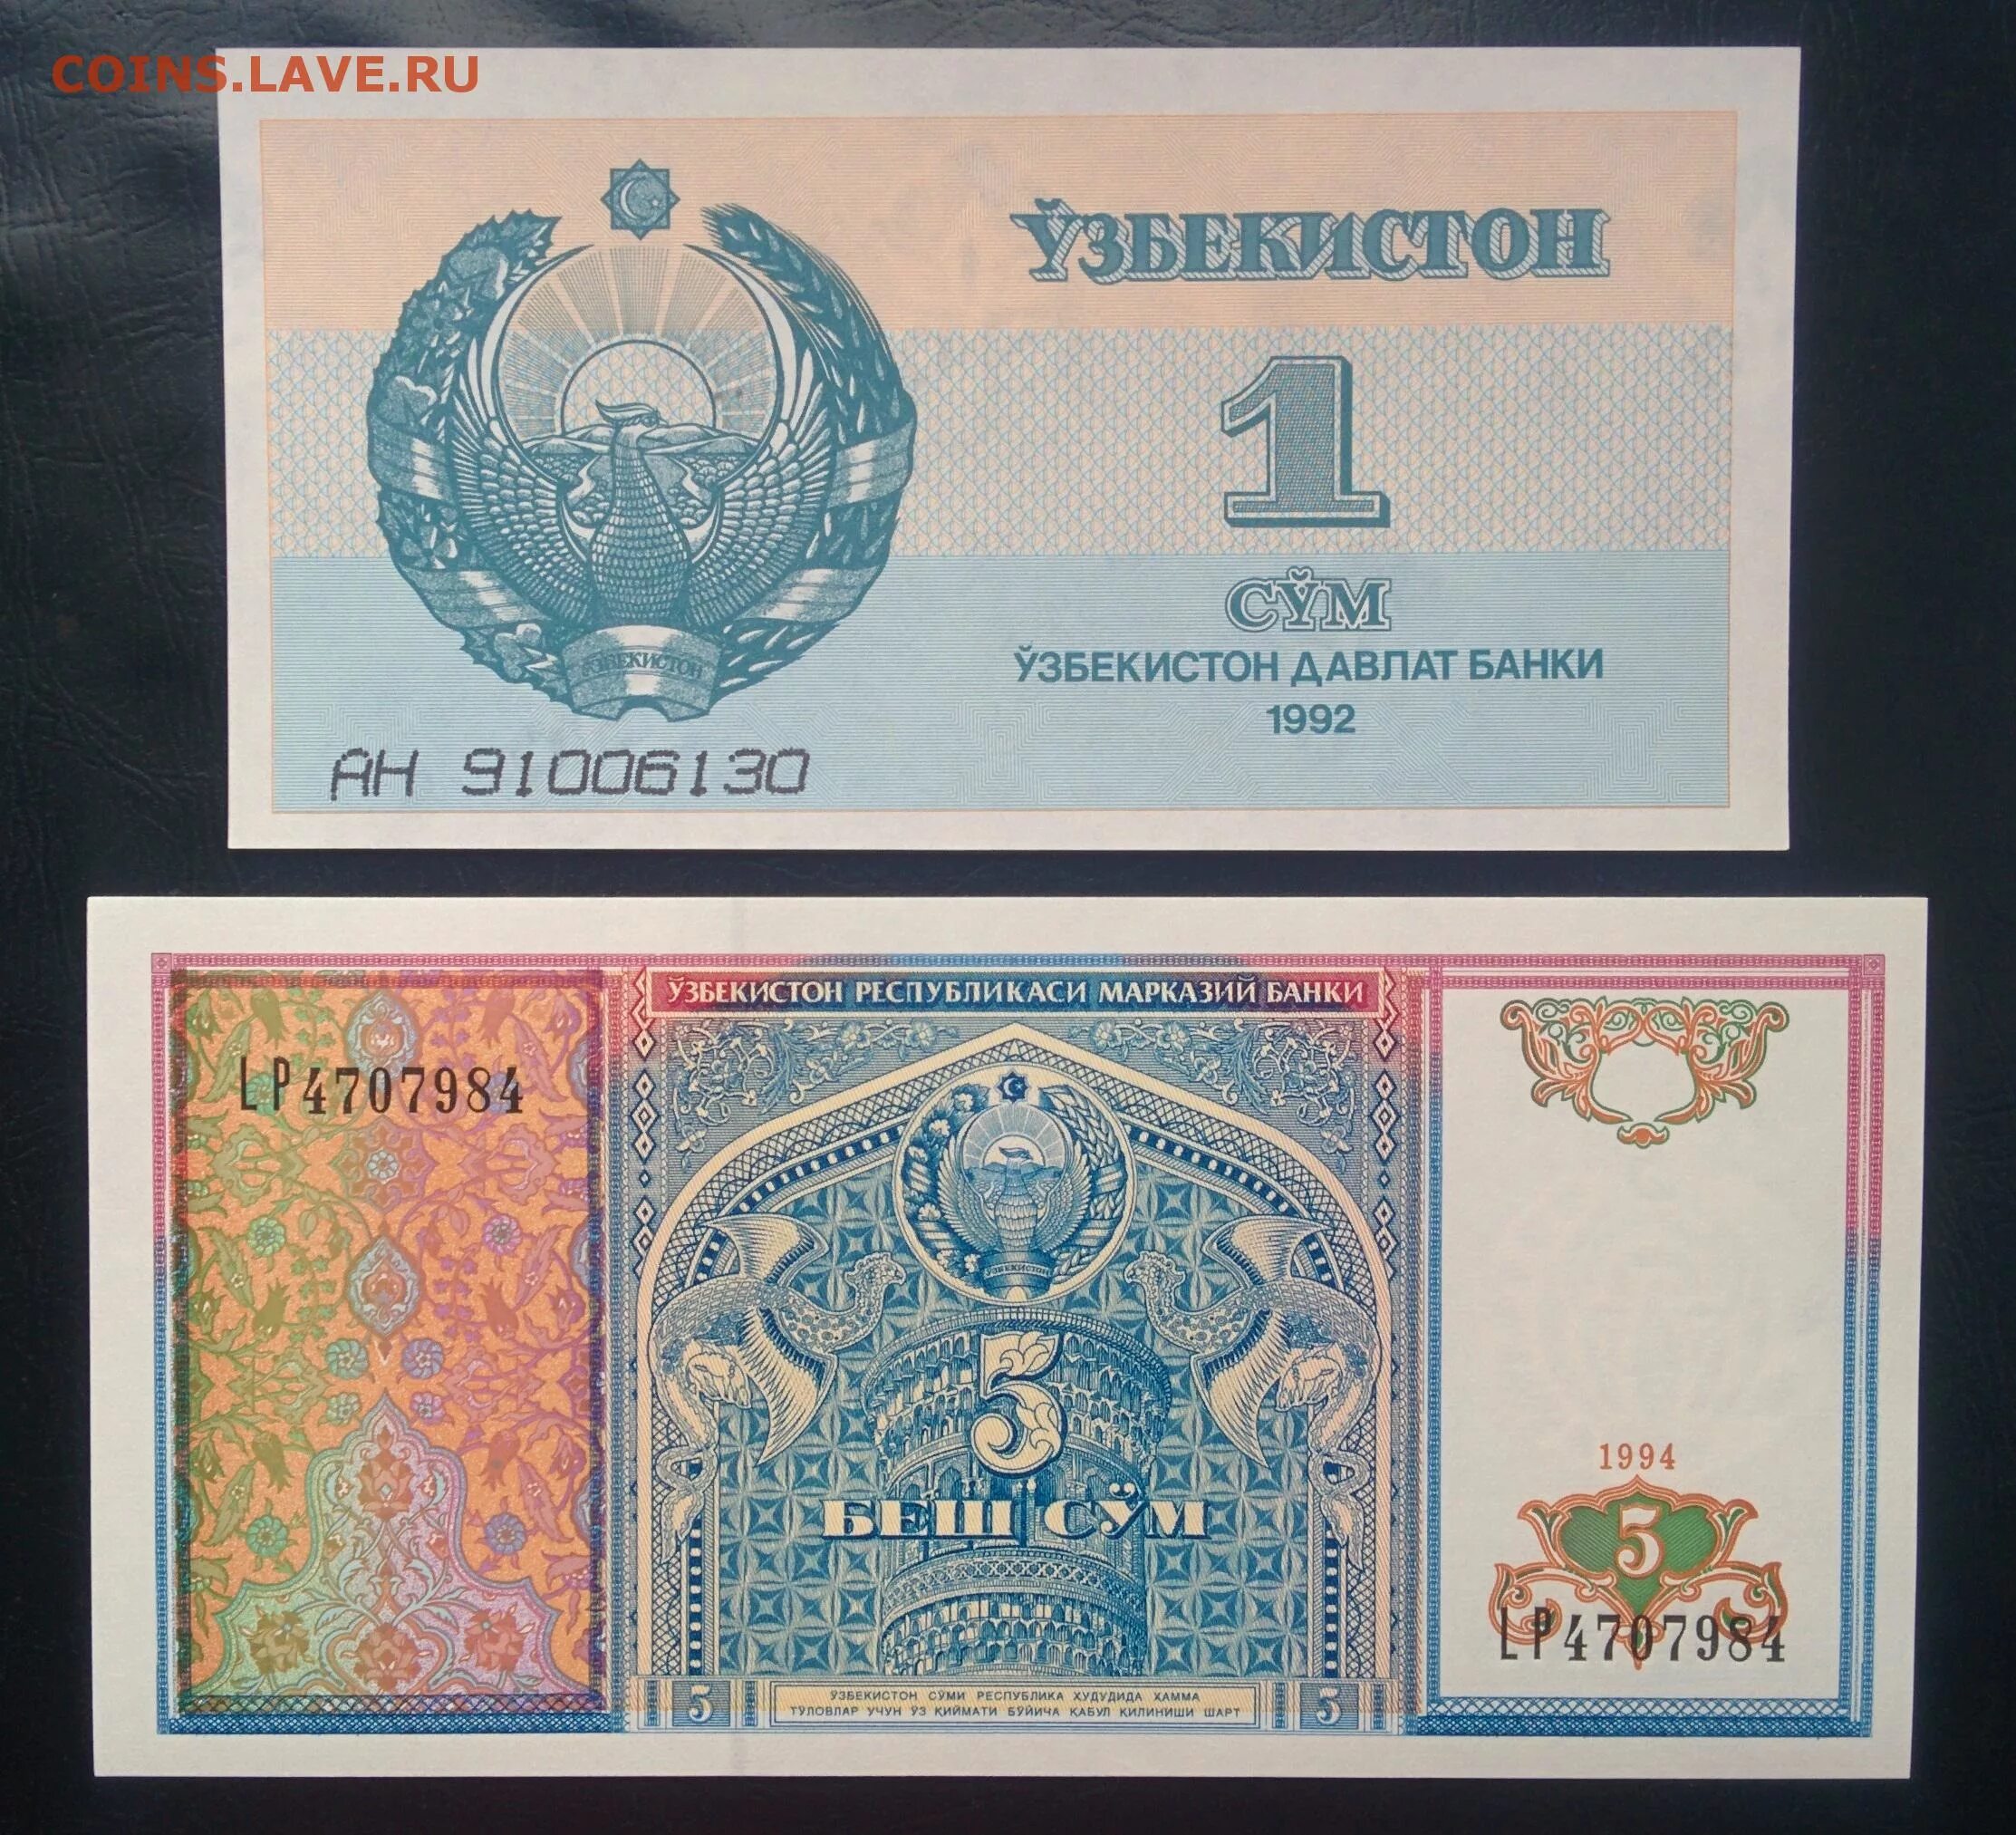 Узбекские сумы на российские